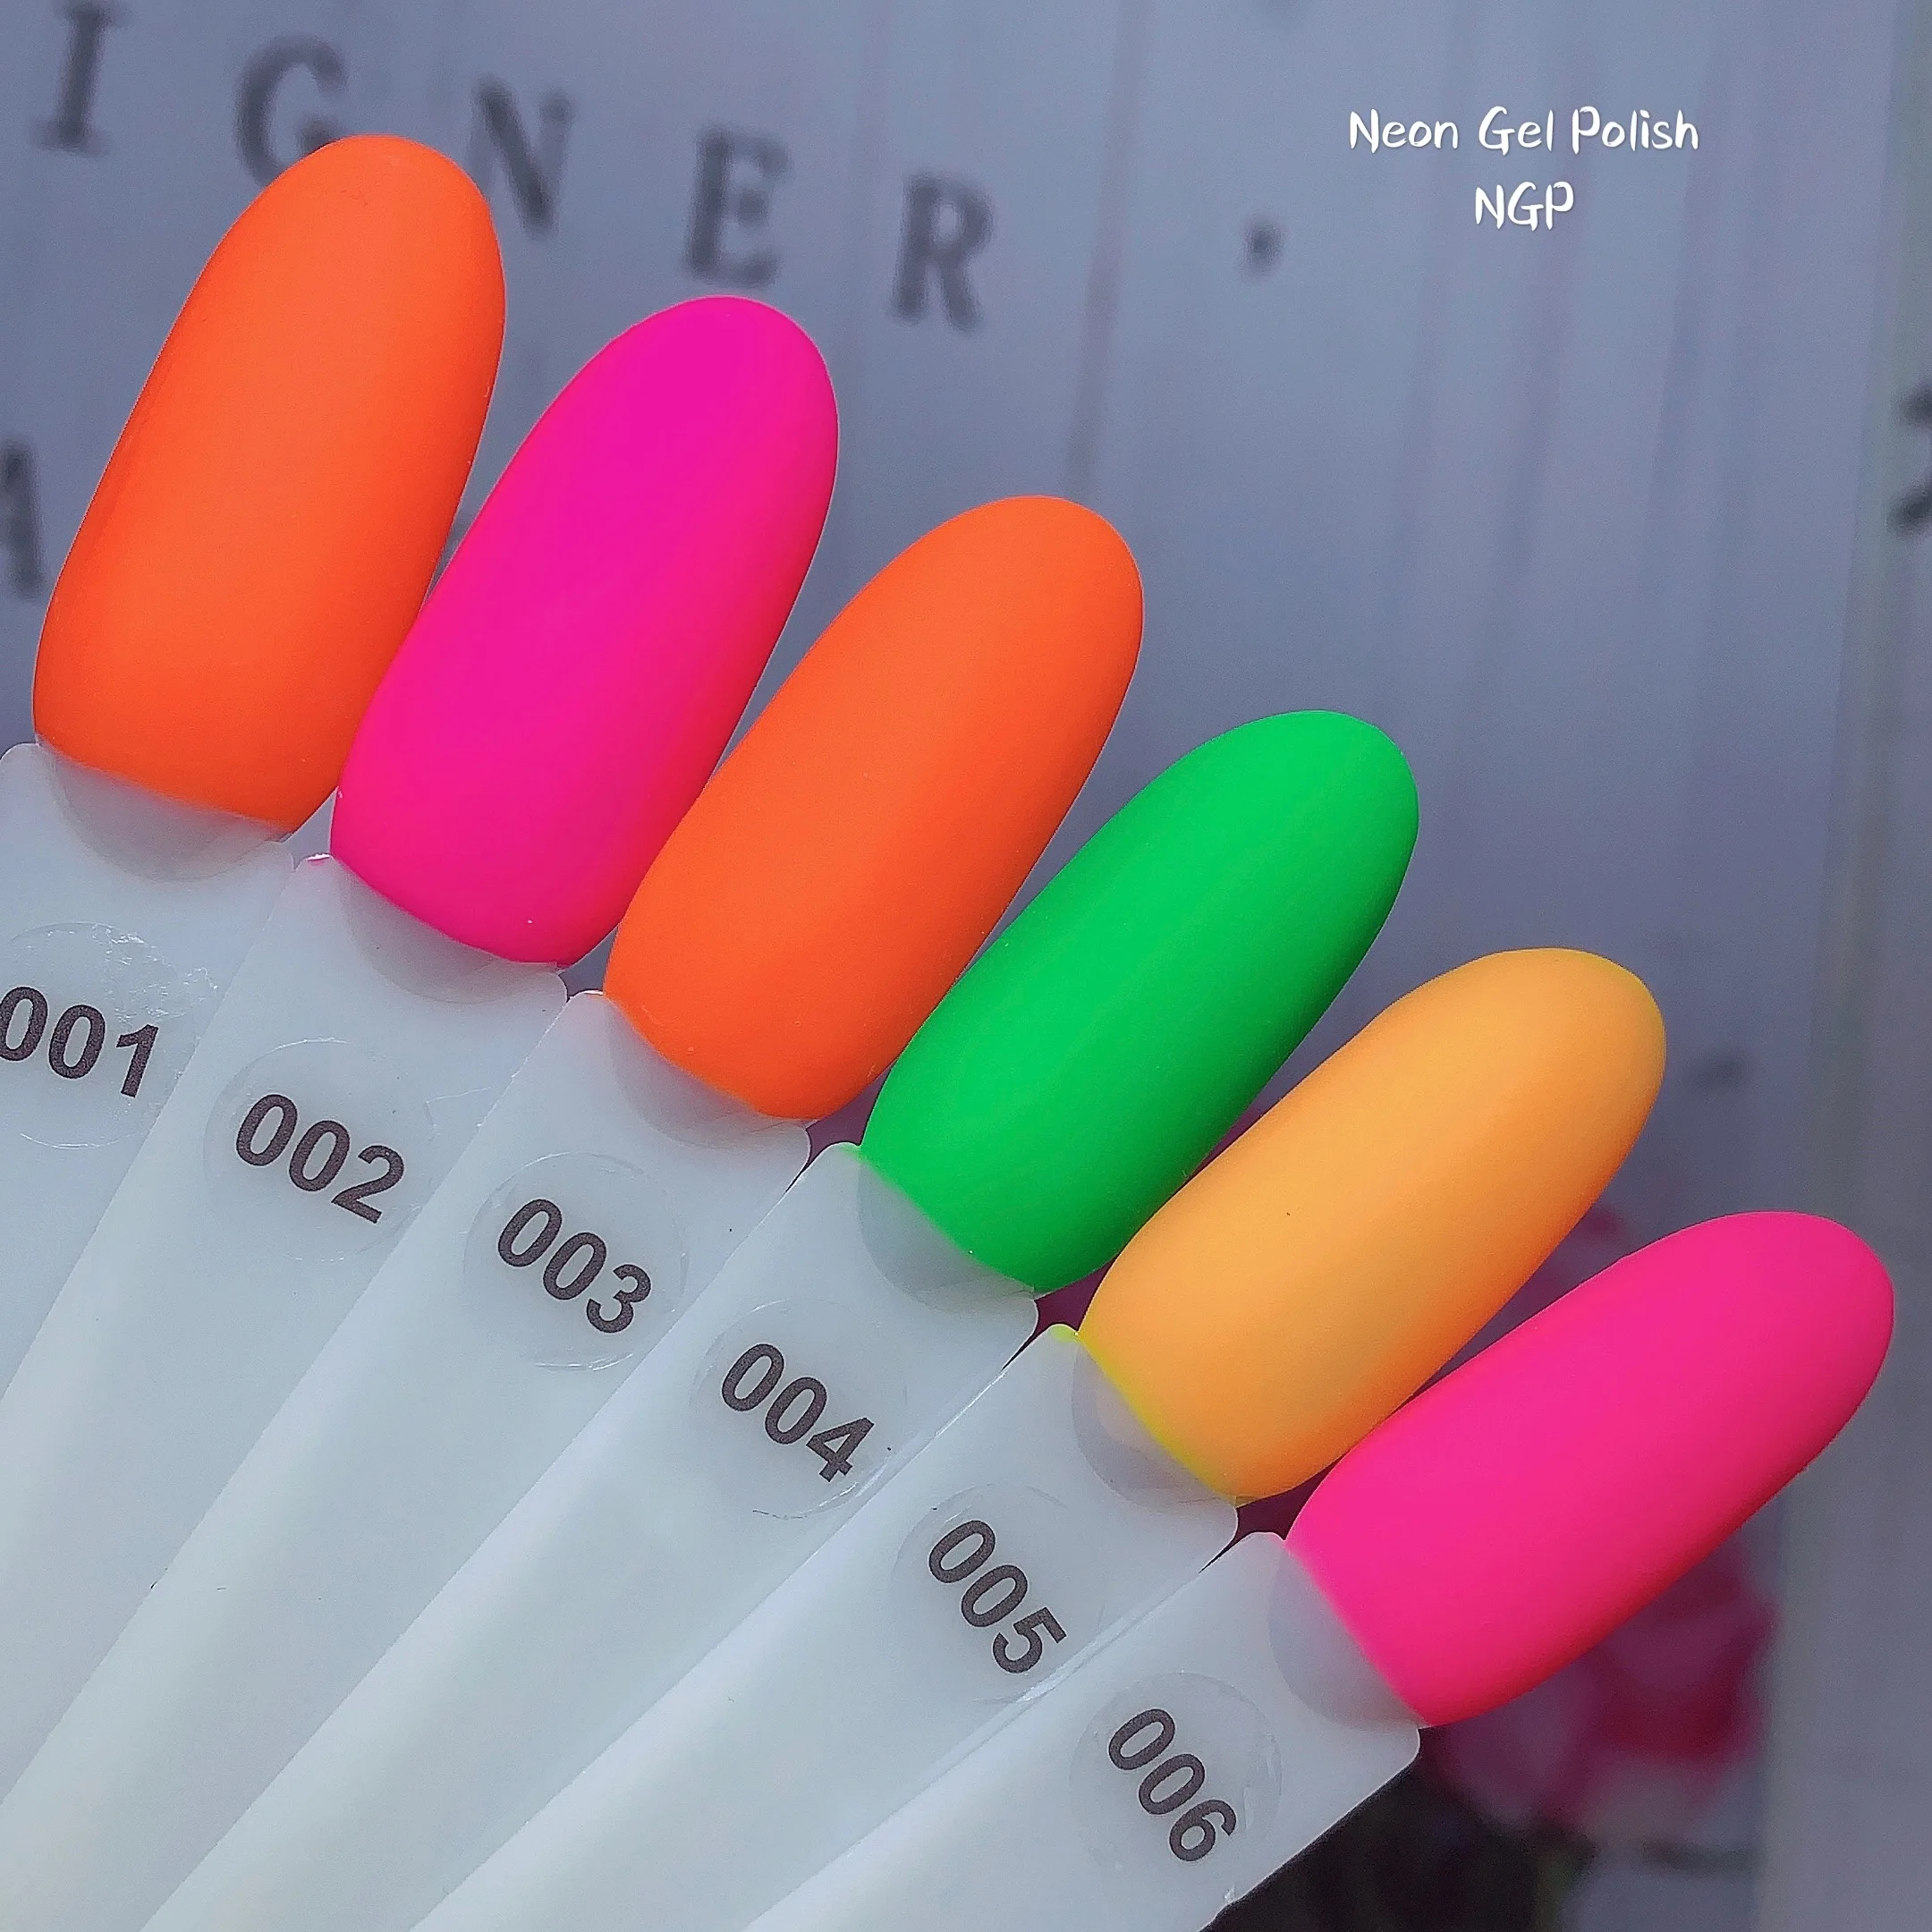 
Неоновый Гель-лак, бесплатный образец, сделано в Китае, товары для красоты оптовая продажа, поставка накладных ногтей Высокое качество длительное замочить от УФ-гель лак для ногтей 